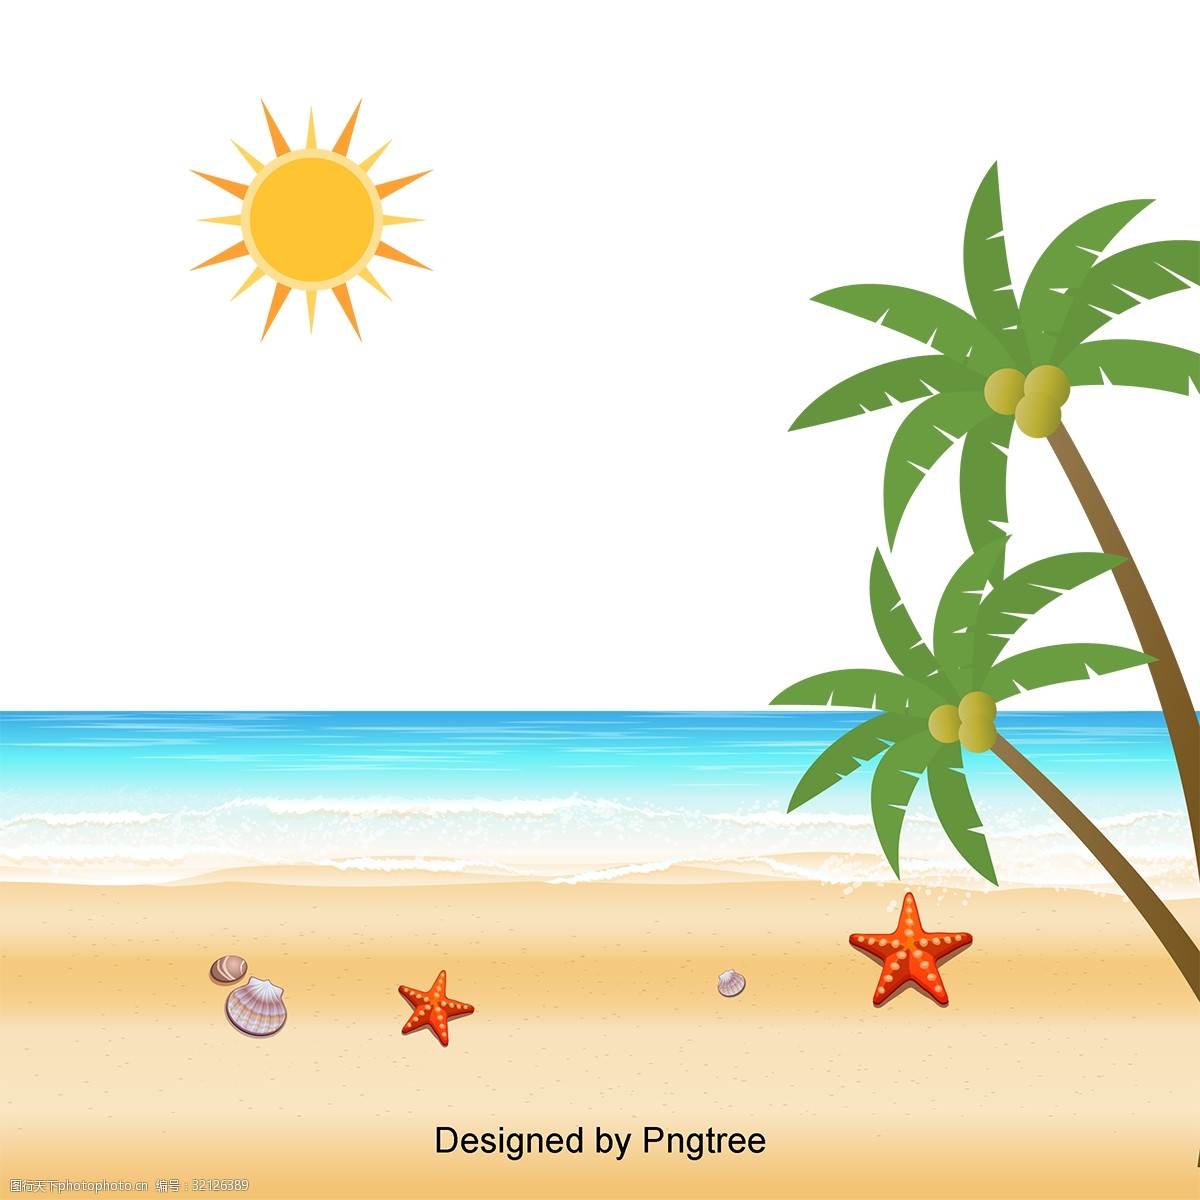 关键词:卡通手绘沙滩设计 卡通简单风格海洋派对海滩假日创意图形画报